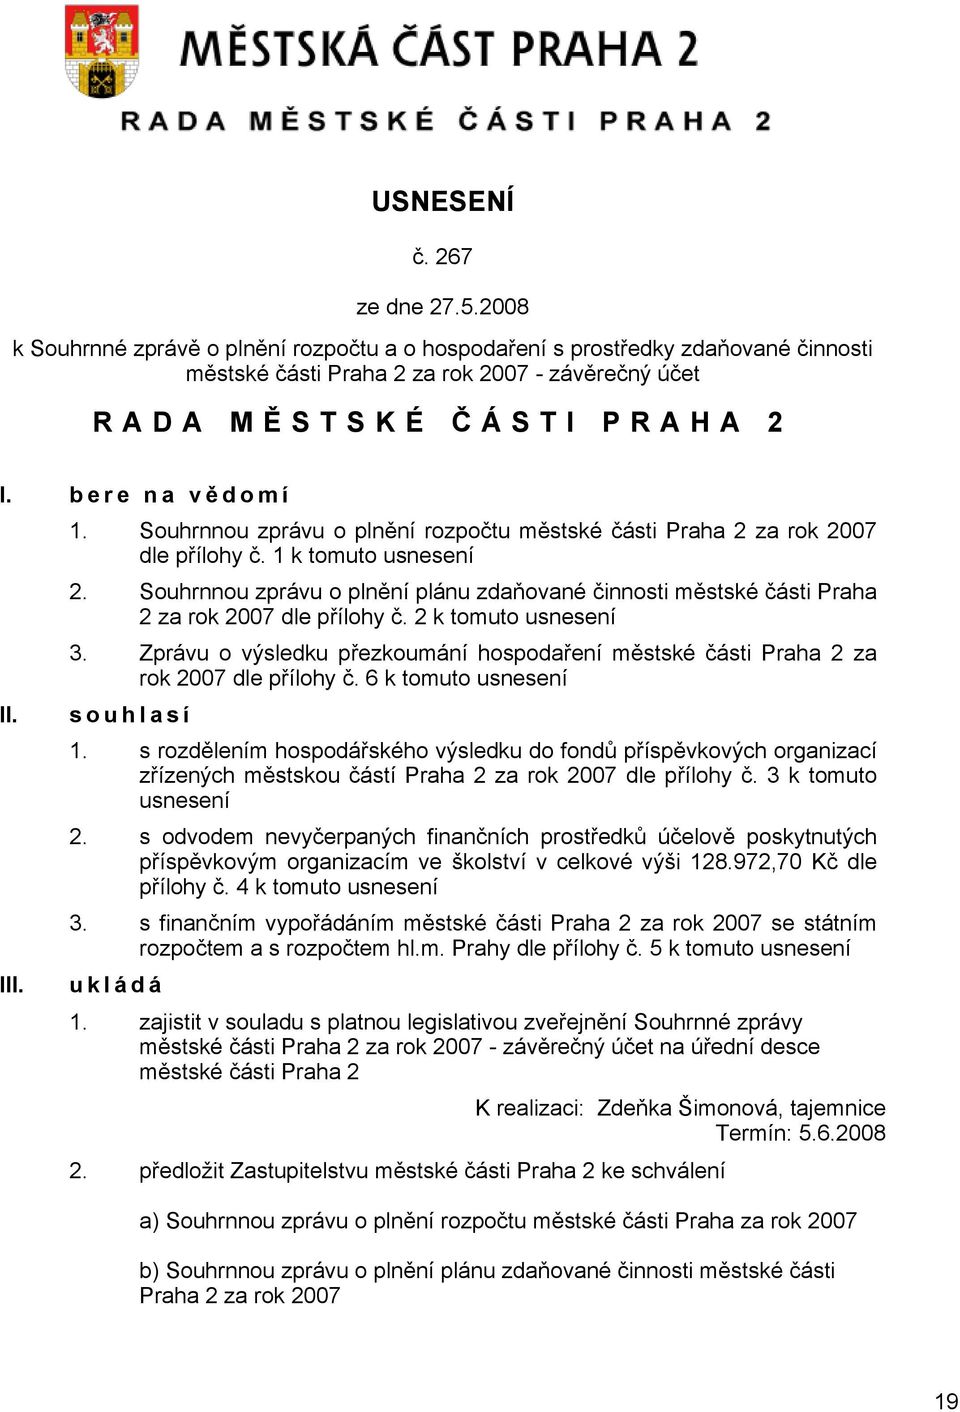 Souhrnnou zprávu o plnění plánu zdaňované činnosti městské části Praha 2 za rok 2007 dle přílohy č. 2 k tomuto usnesení 3.